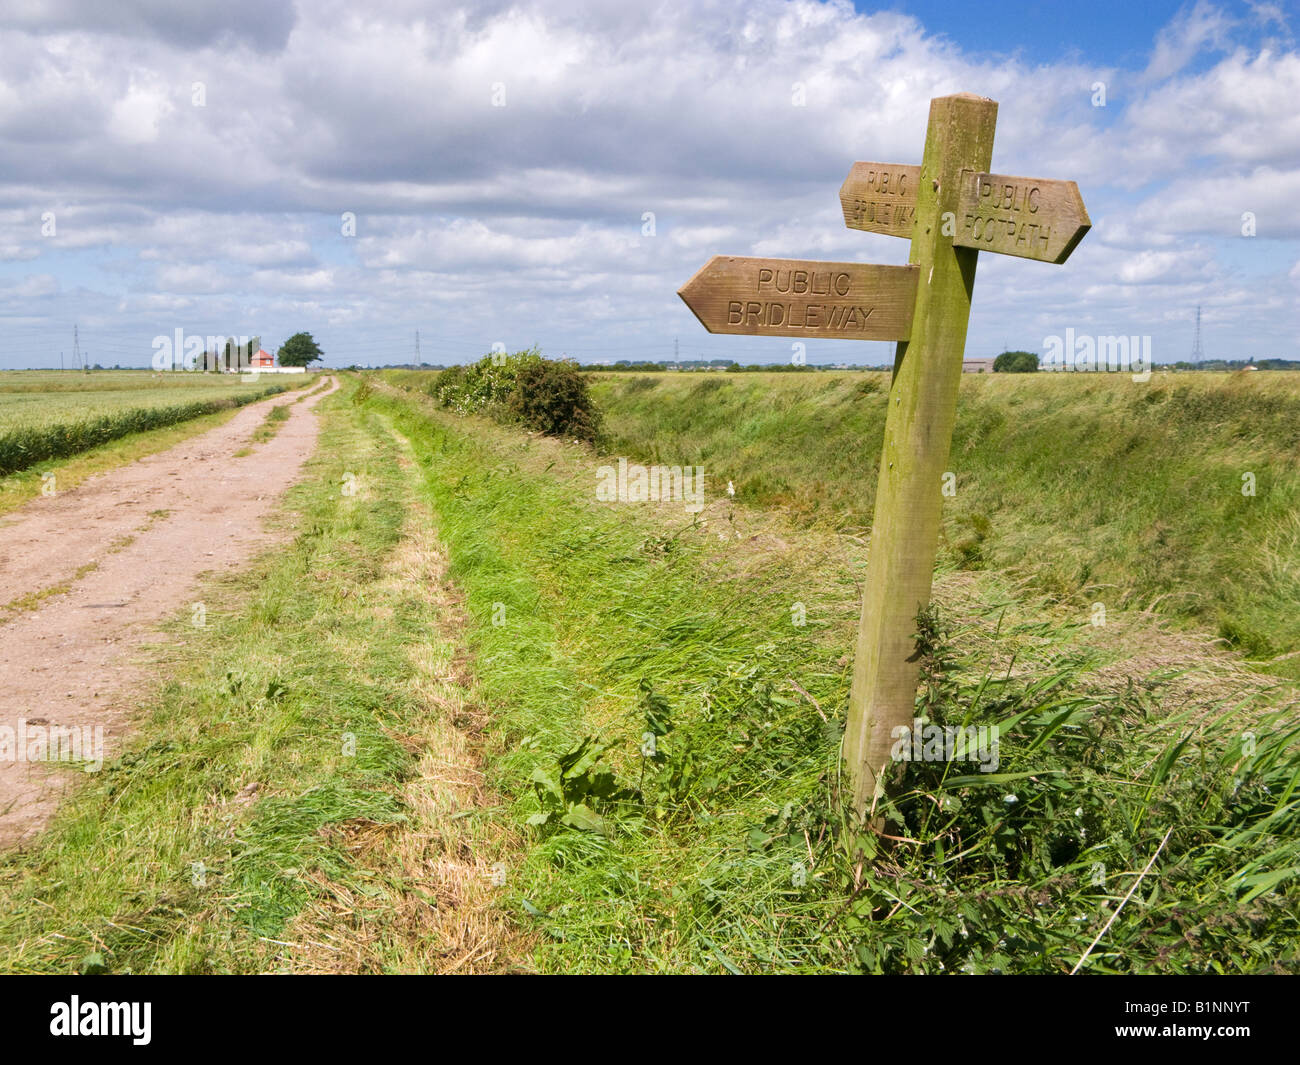 Cartel de madera con poste indicador público de senderos y rutas ecuestres en los pantanos, East Yorkshire, Inglaterra, Reino Unido. Foto de stock